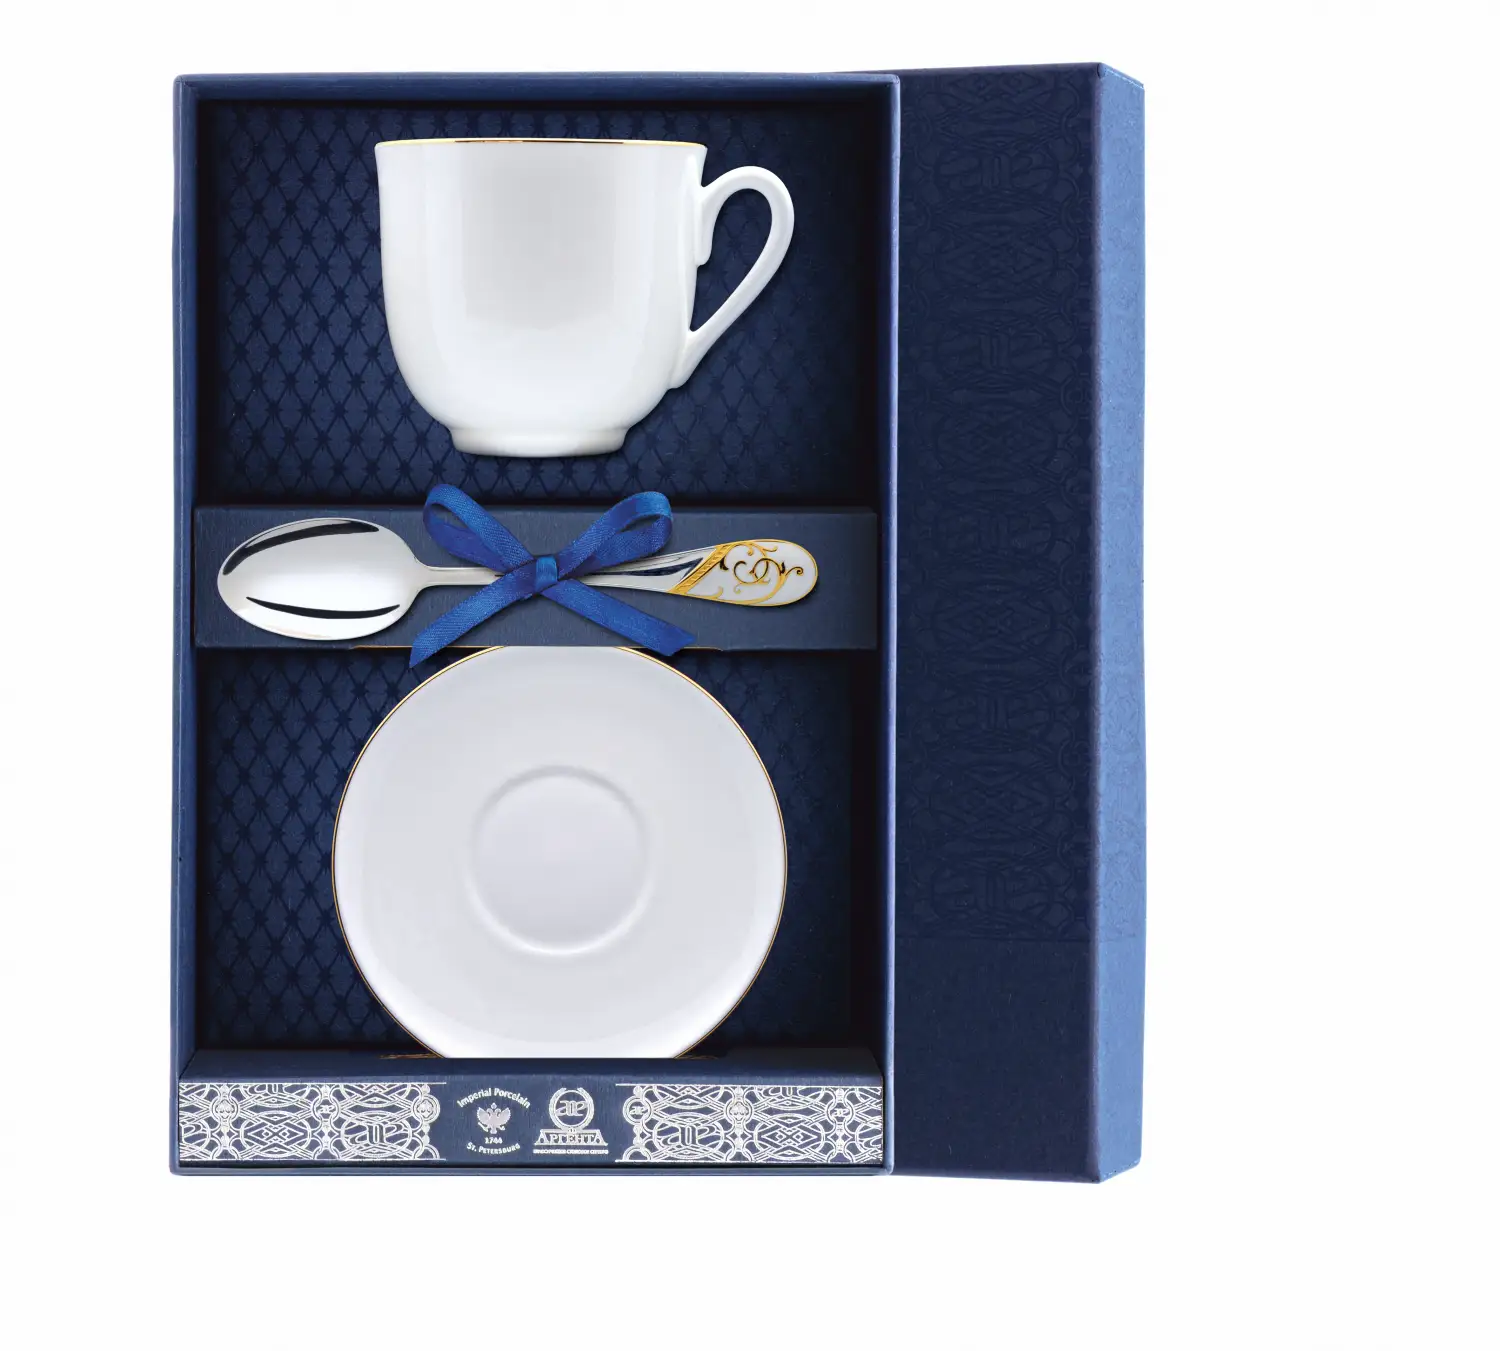 Набор чайный Ландыш - Золотой кантик: блюдце, ложка, чашка (Серебро 925) набор чайный ландыш фигурное катание блюдце ложка чашка серебро 925